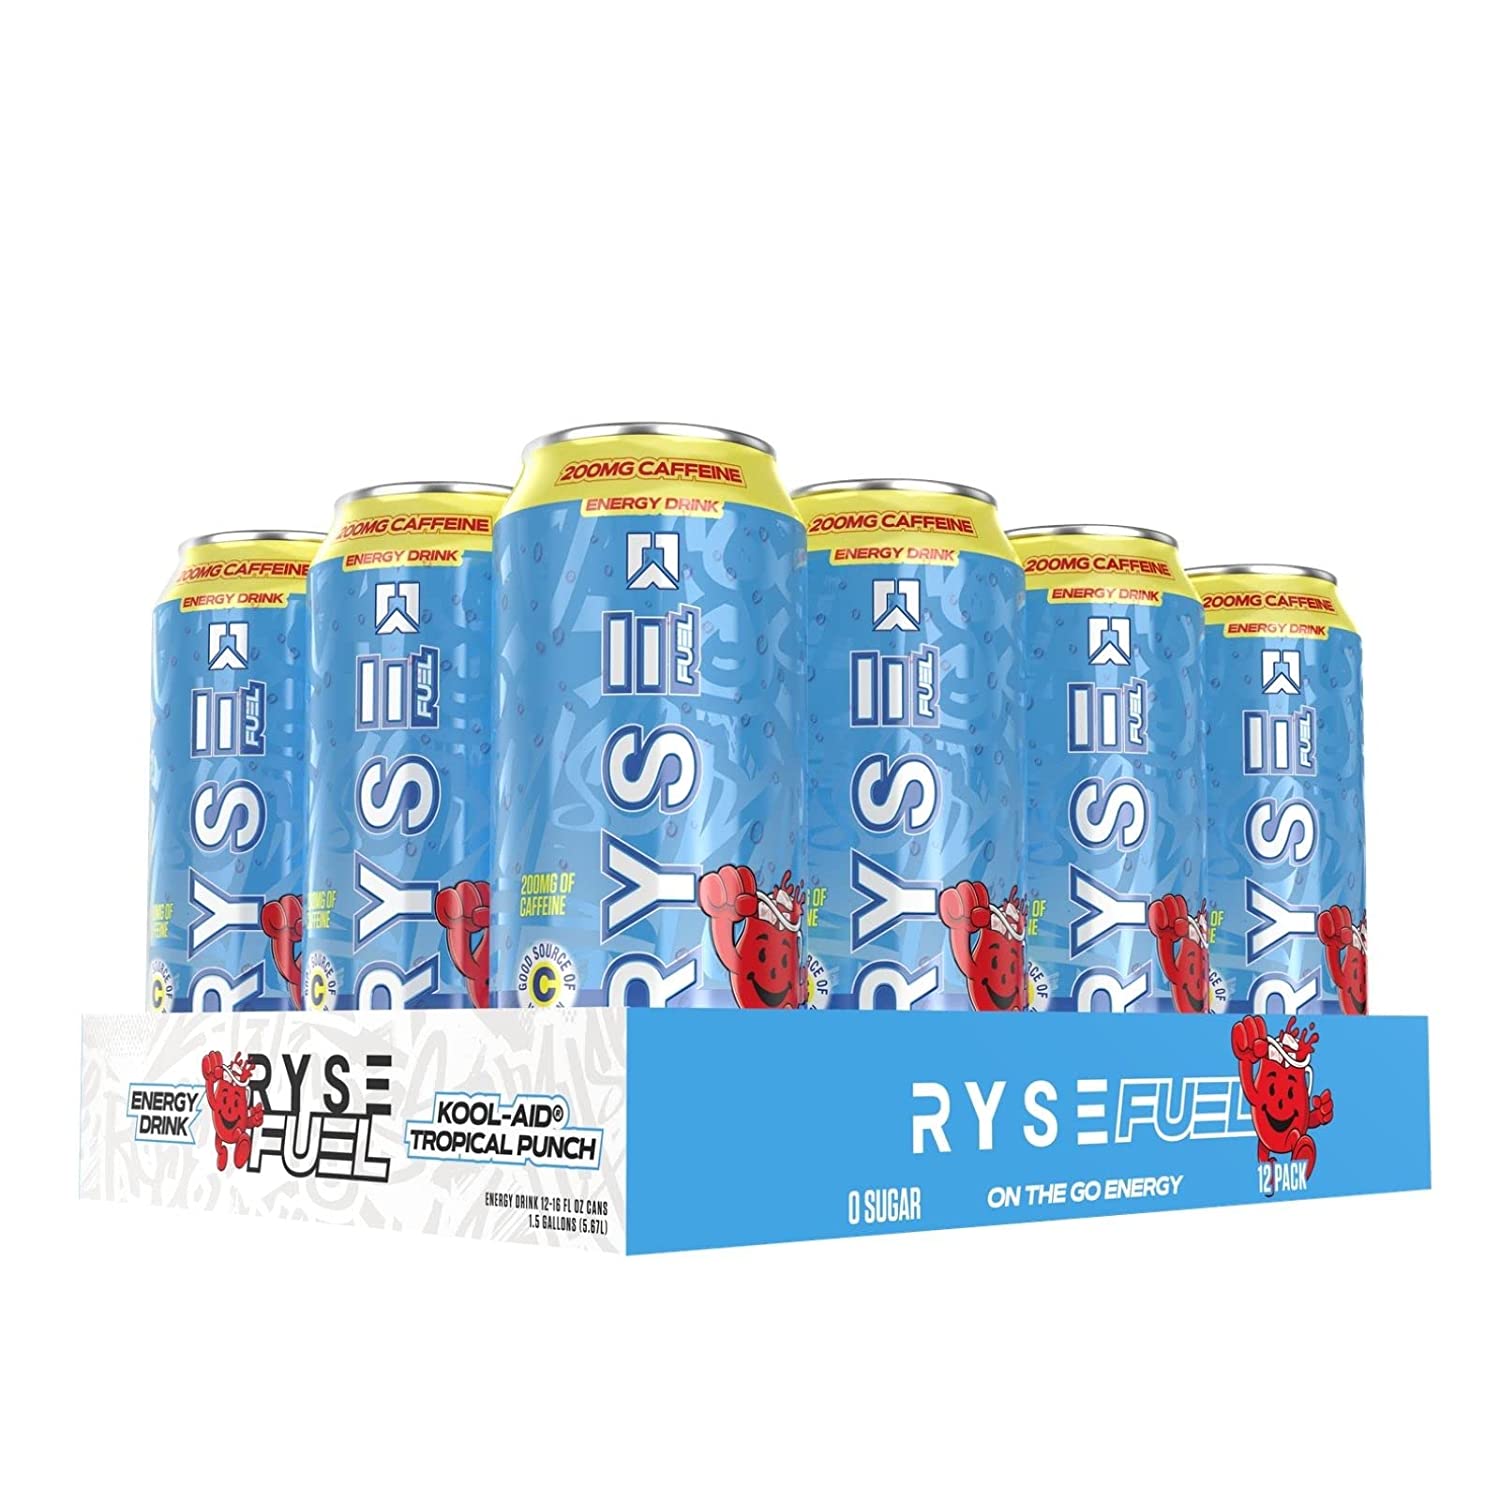 Ryse Energy Drink